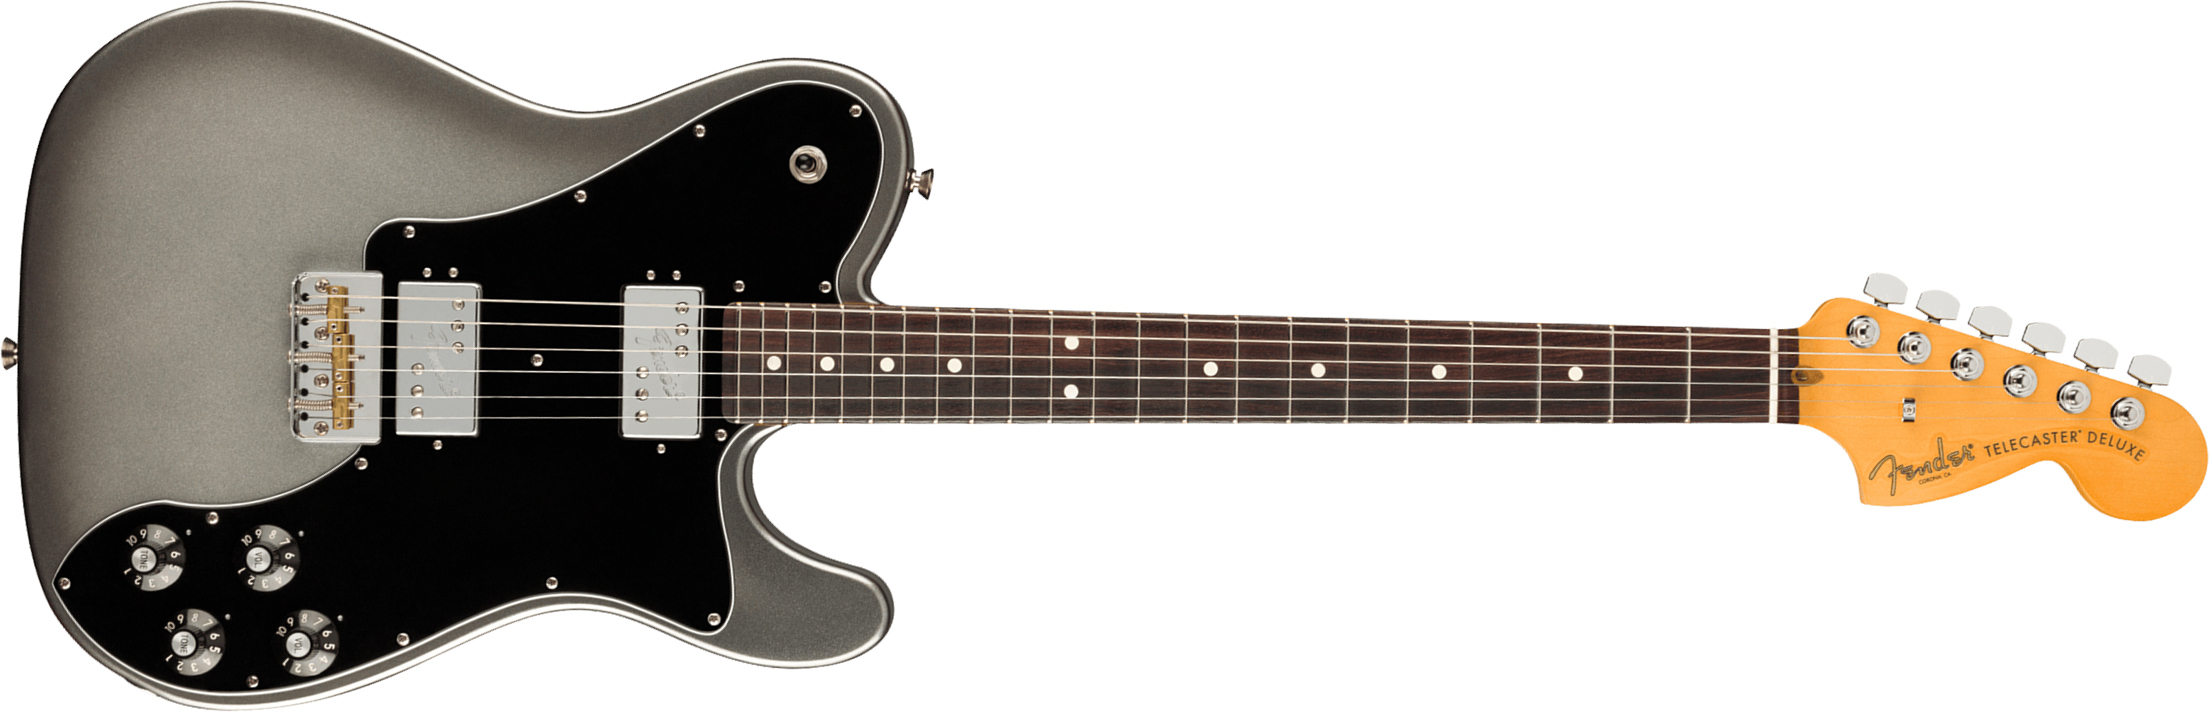 Fender Tele Deluxe American Professional Ii Usa Rw - Mercury - E-Gitarre in Teleform - Main picture